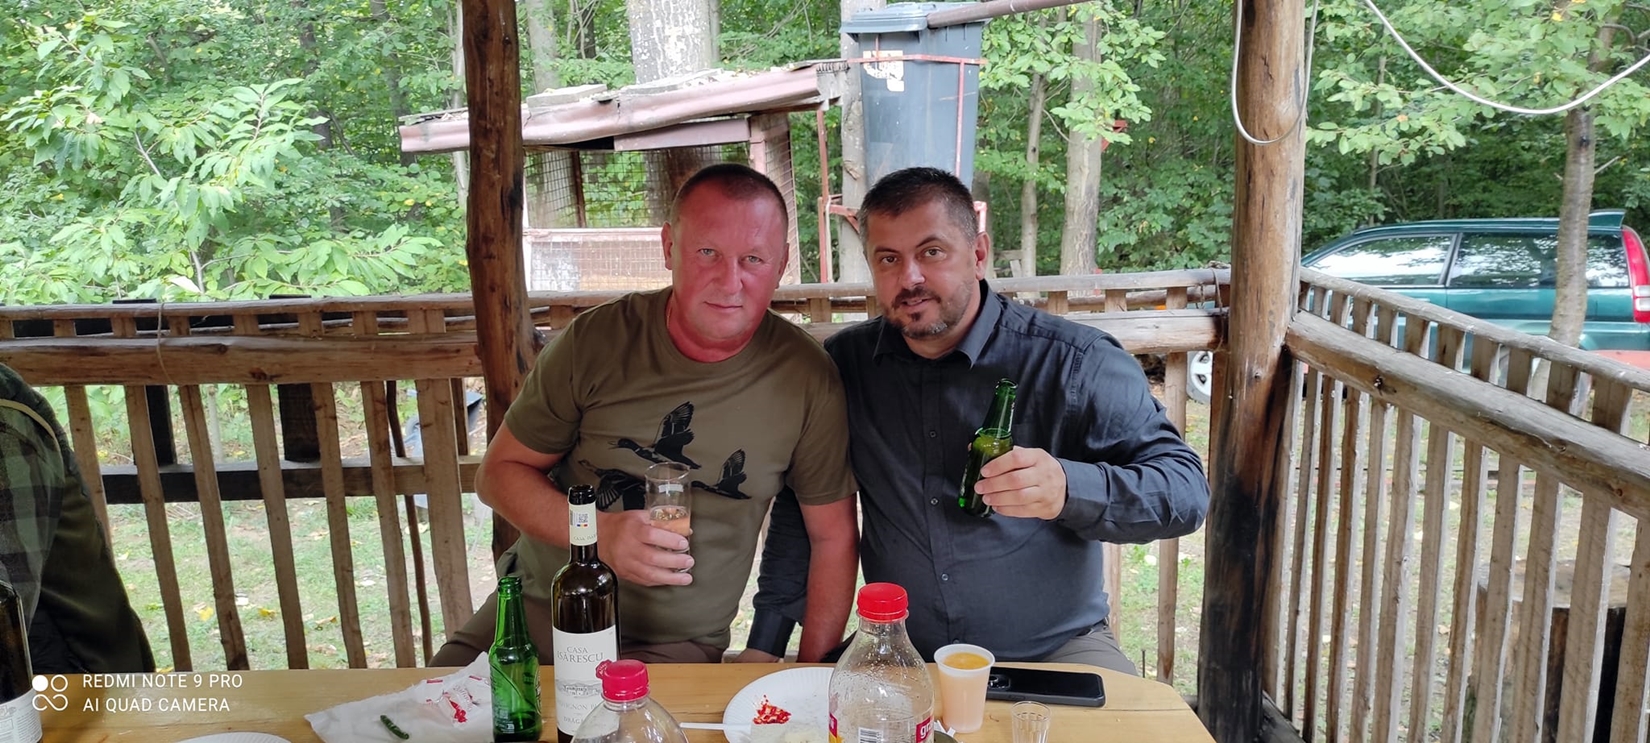 Ioan Morocăzan de la RADP Cluj, dreapta, cu o bere in mână.